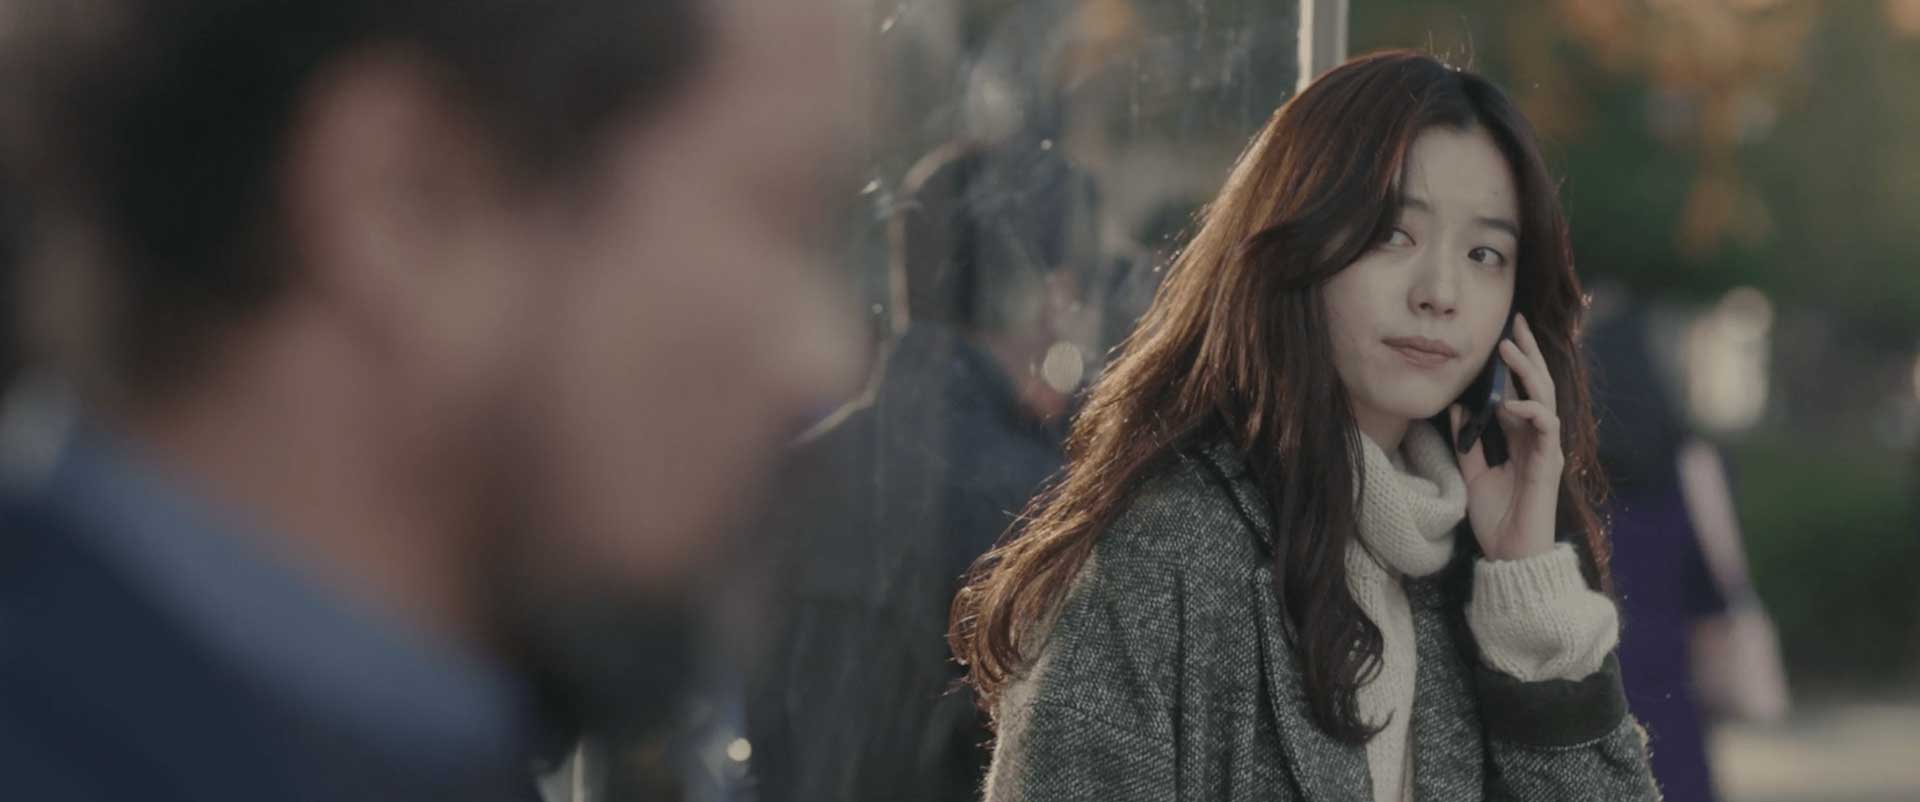 دختر کره ای در حال نگاه کردن به مرد و تماس با تلفن در فیلم The Beauty Inside